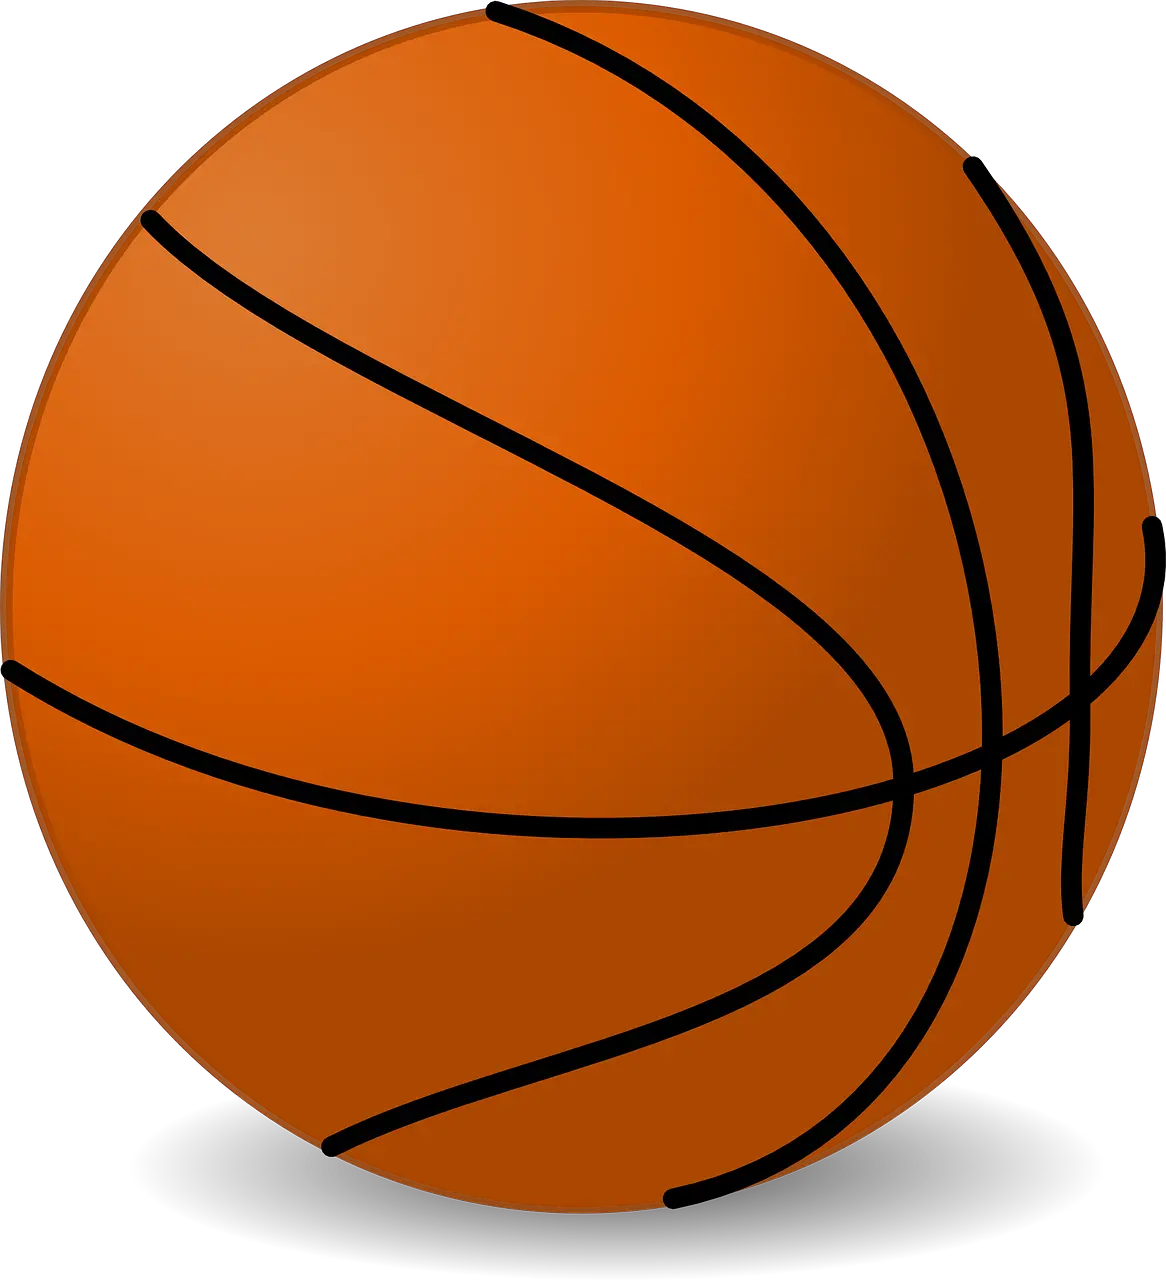 2 On 2 Basketball Logo Png